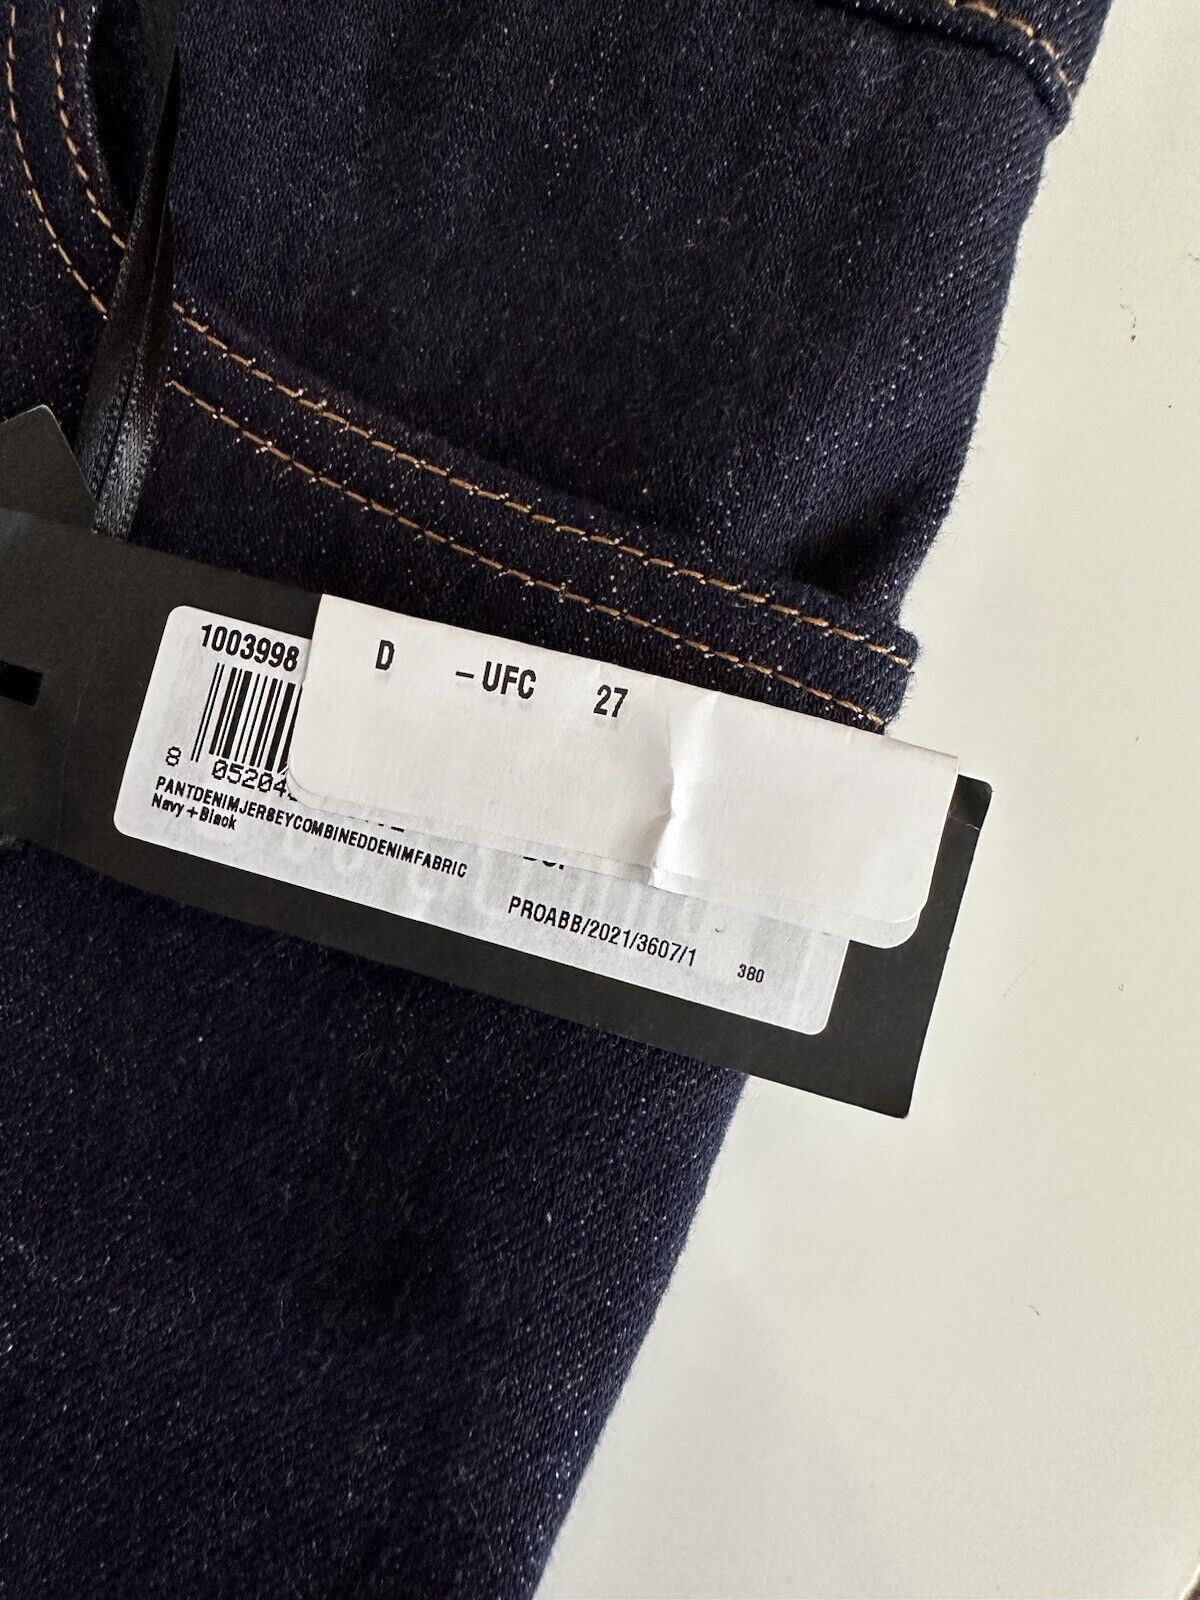 Neu mit Etikett: 925 $ Versace Damen-Jeans in Denimblau, Größe 27 US 1003998, hergestellt in Italien